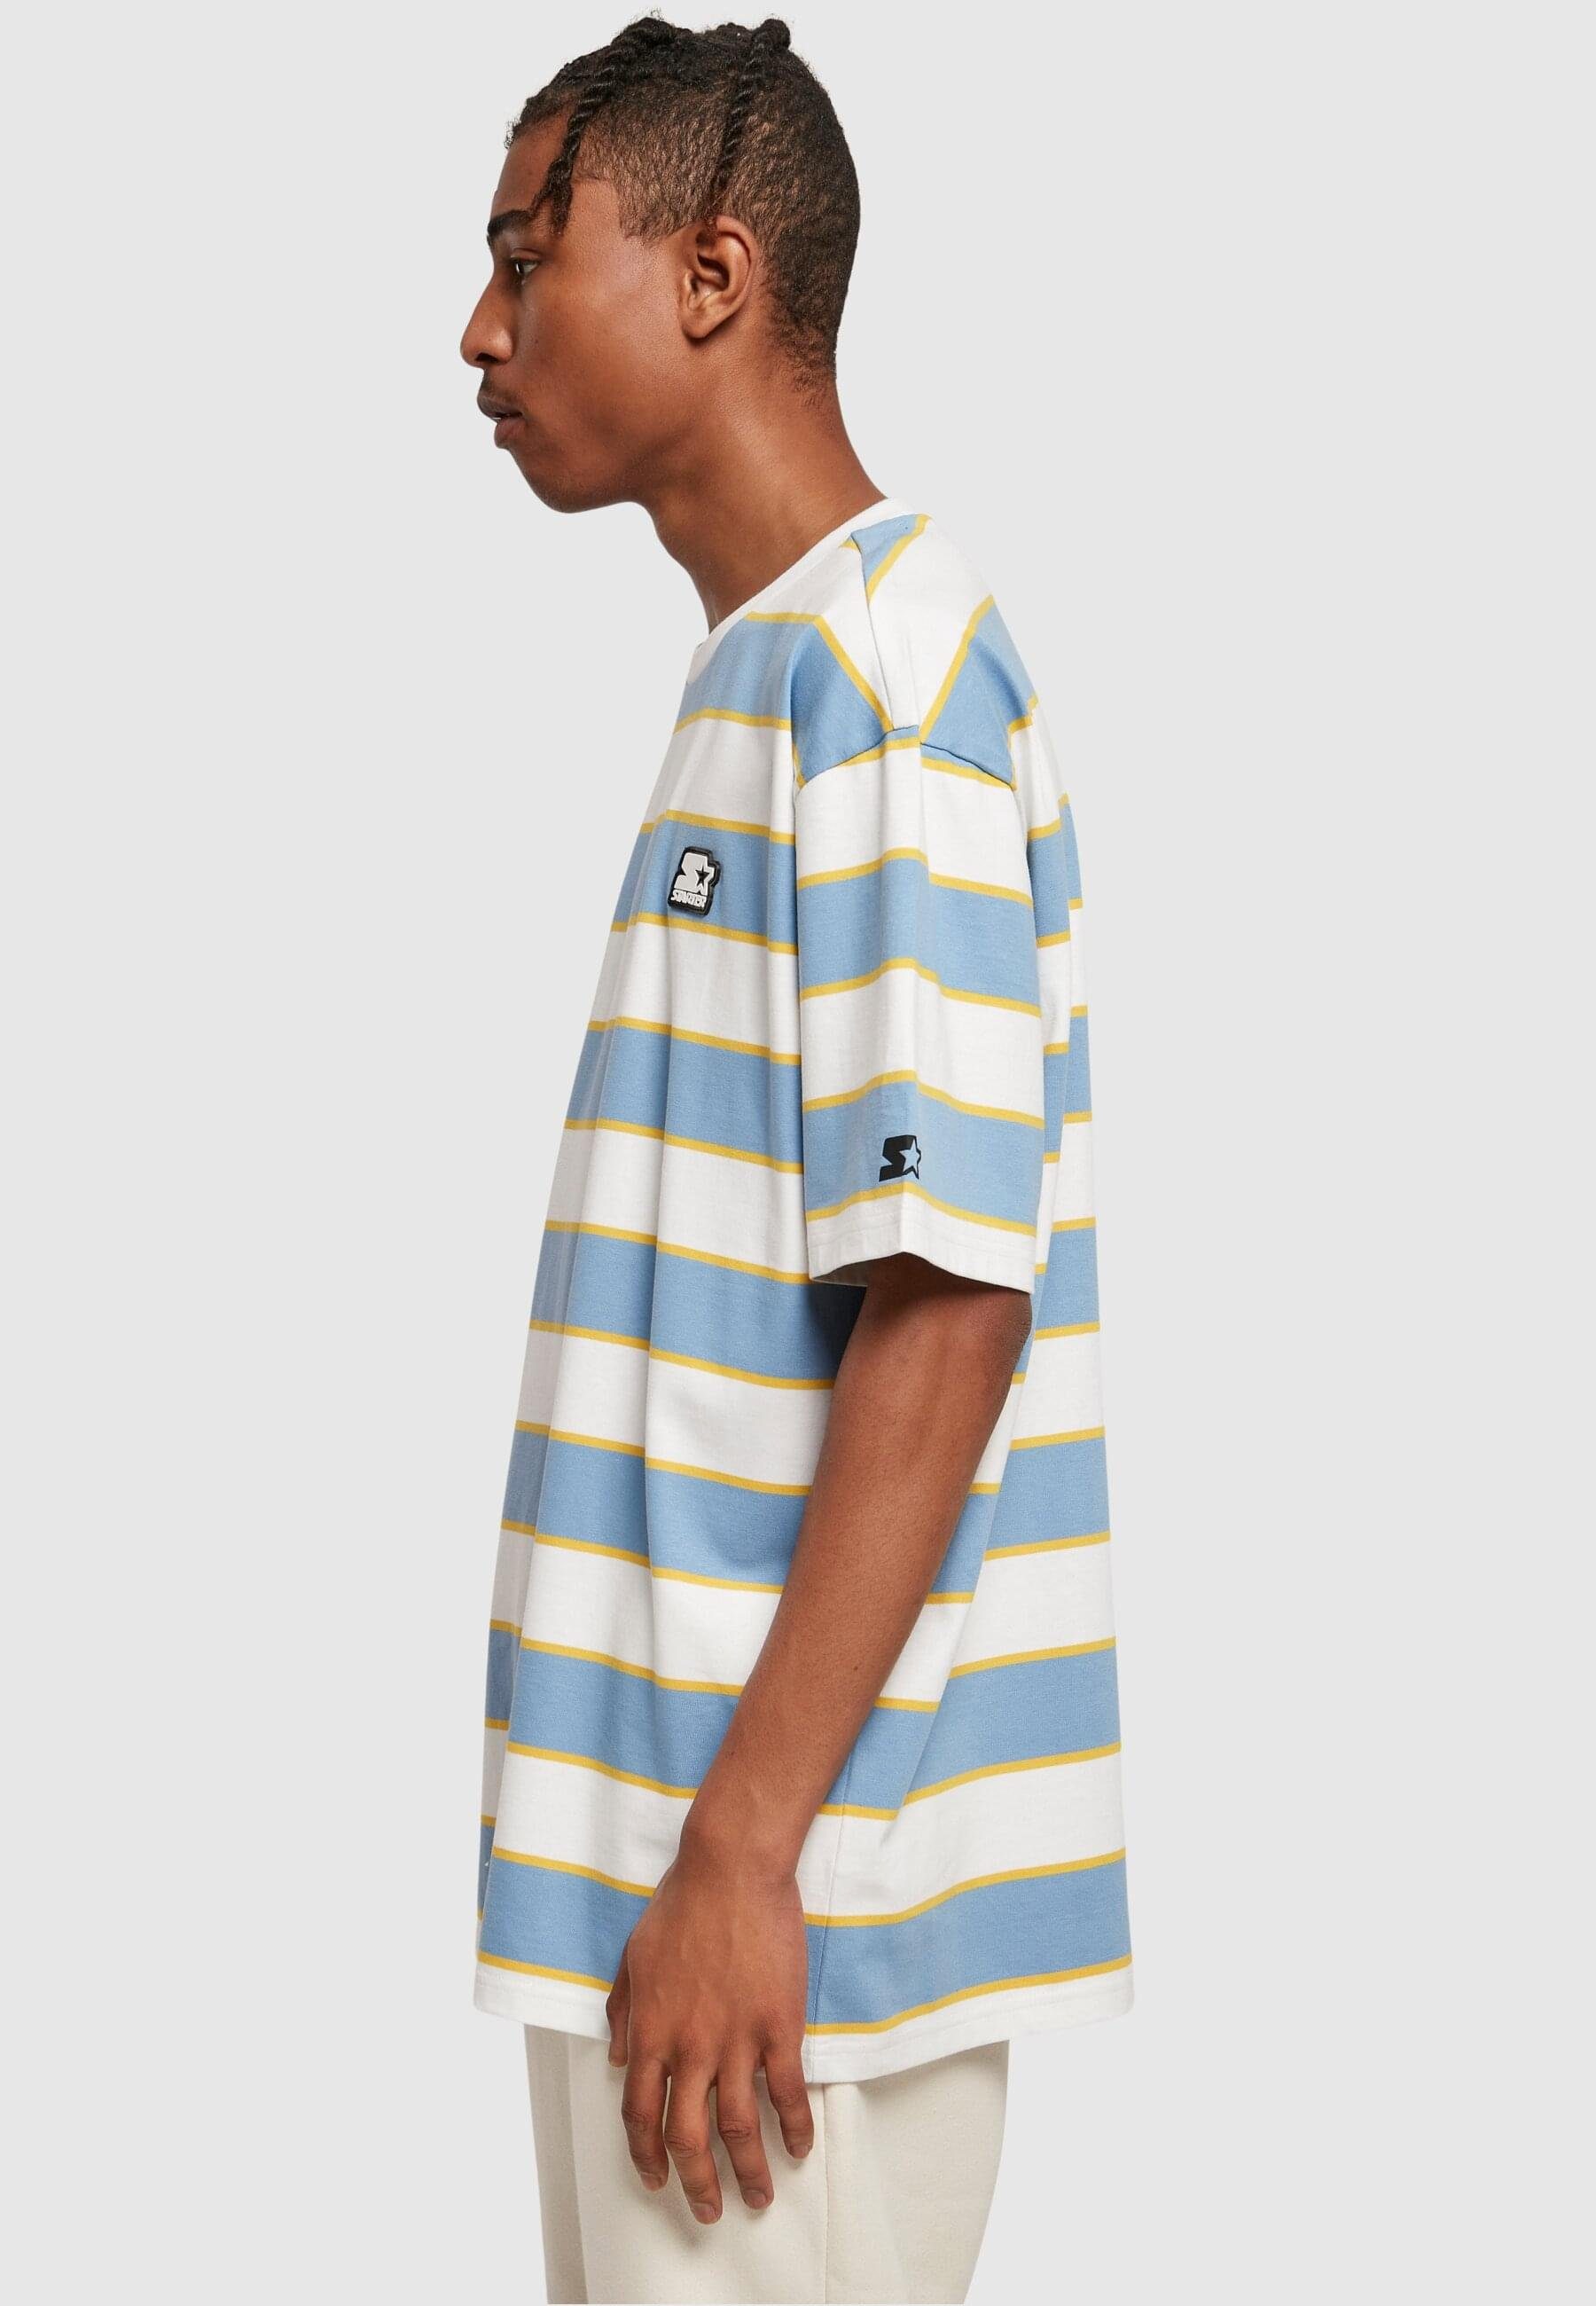 Block Starter white/horizonblue/califoniayellow Herren Starter T-Shirt (1-tlg) Tee Stripes